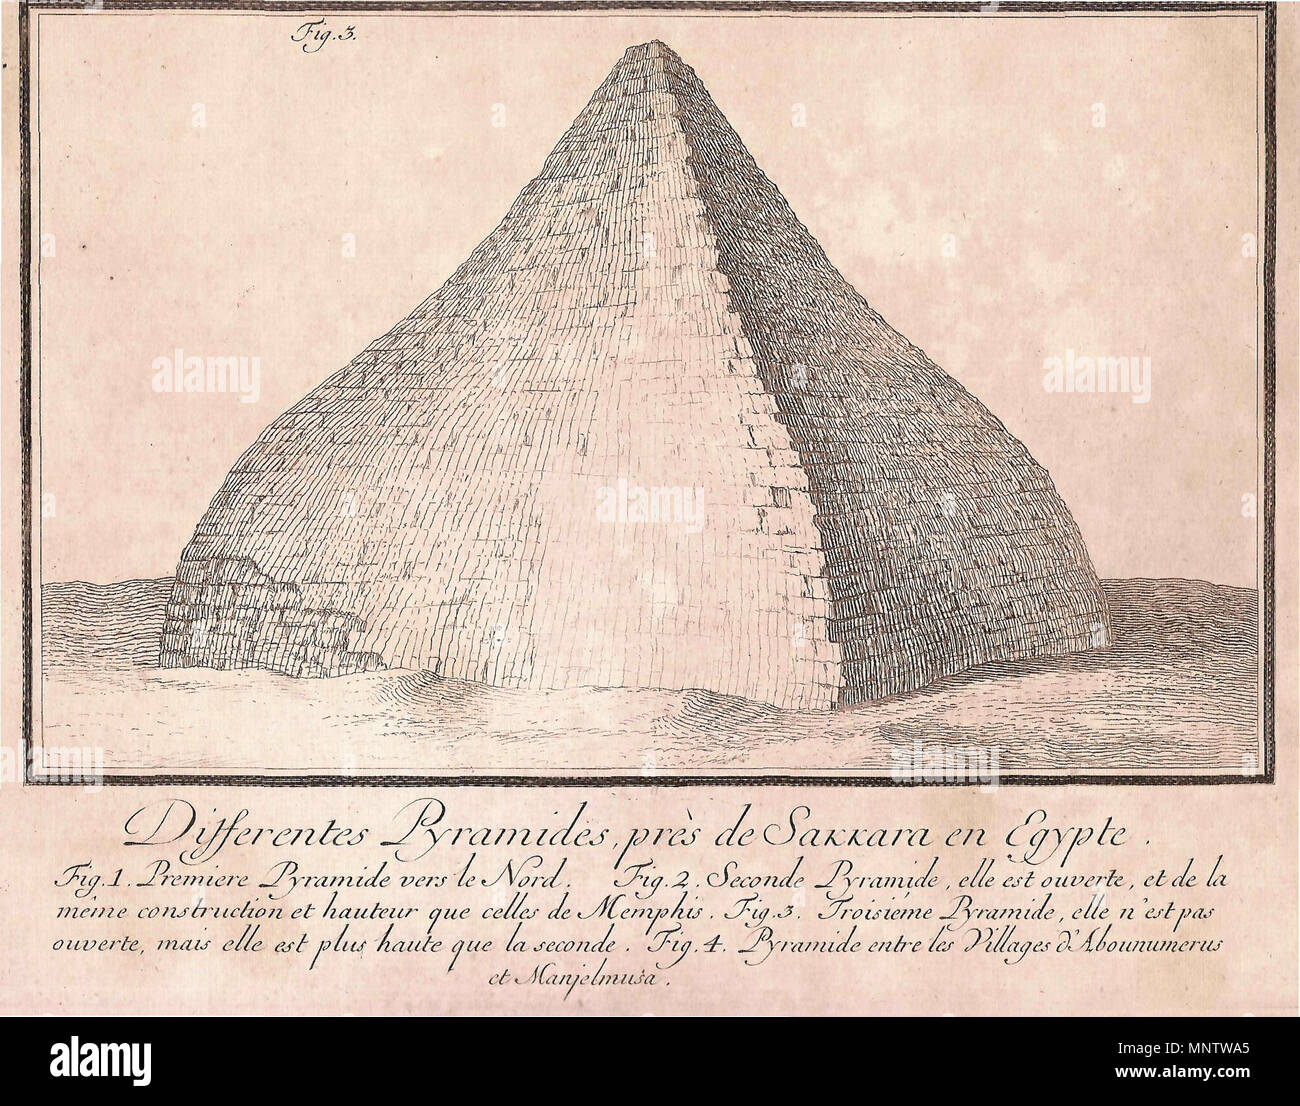 . Anglais : La pyramide rhomboïdale au 18e siècle. Français : La pyramide rhomboïdale au XVIIIe siècle. . 1755. 1059 Rhomboidale-norden Banque D'Images